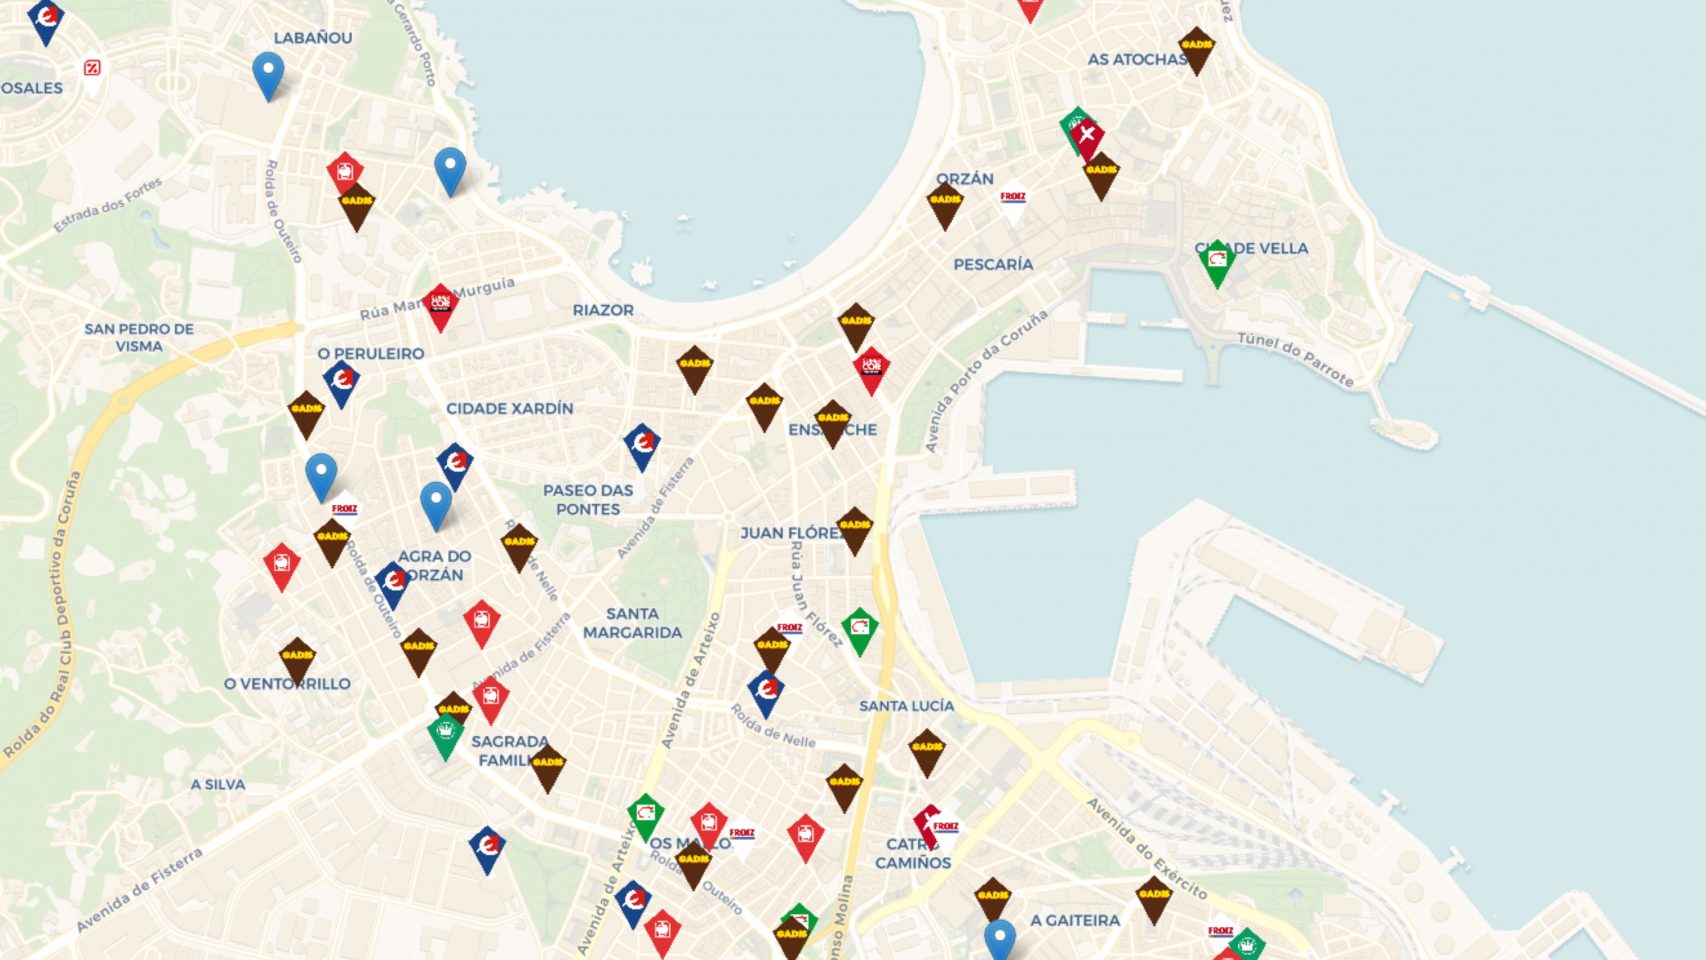 Mapa de supermercados en la web 